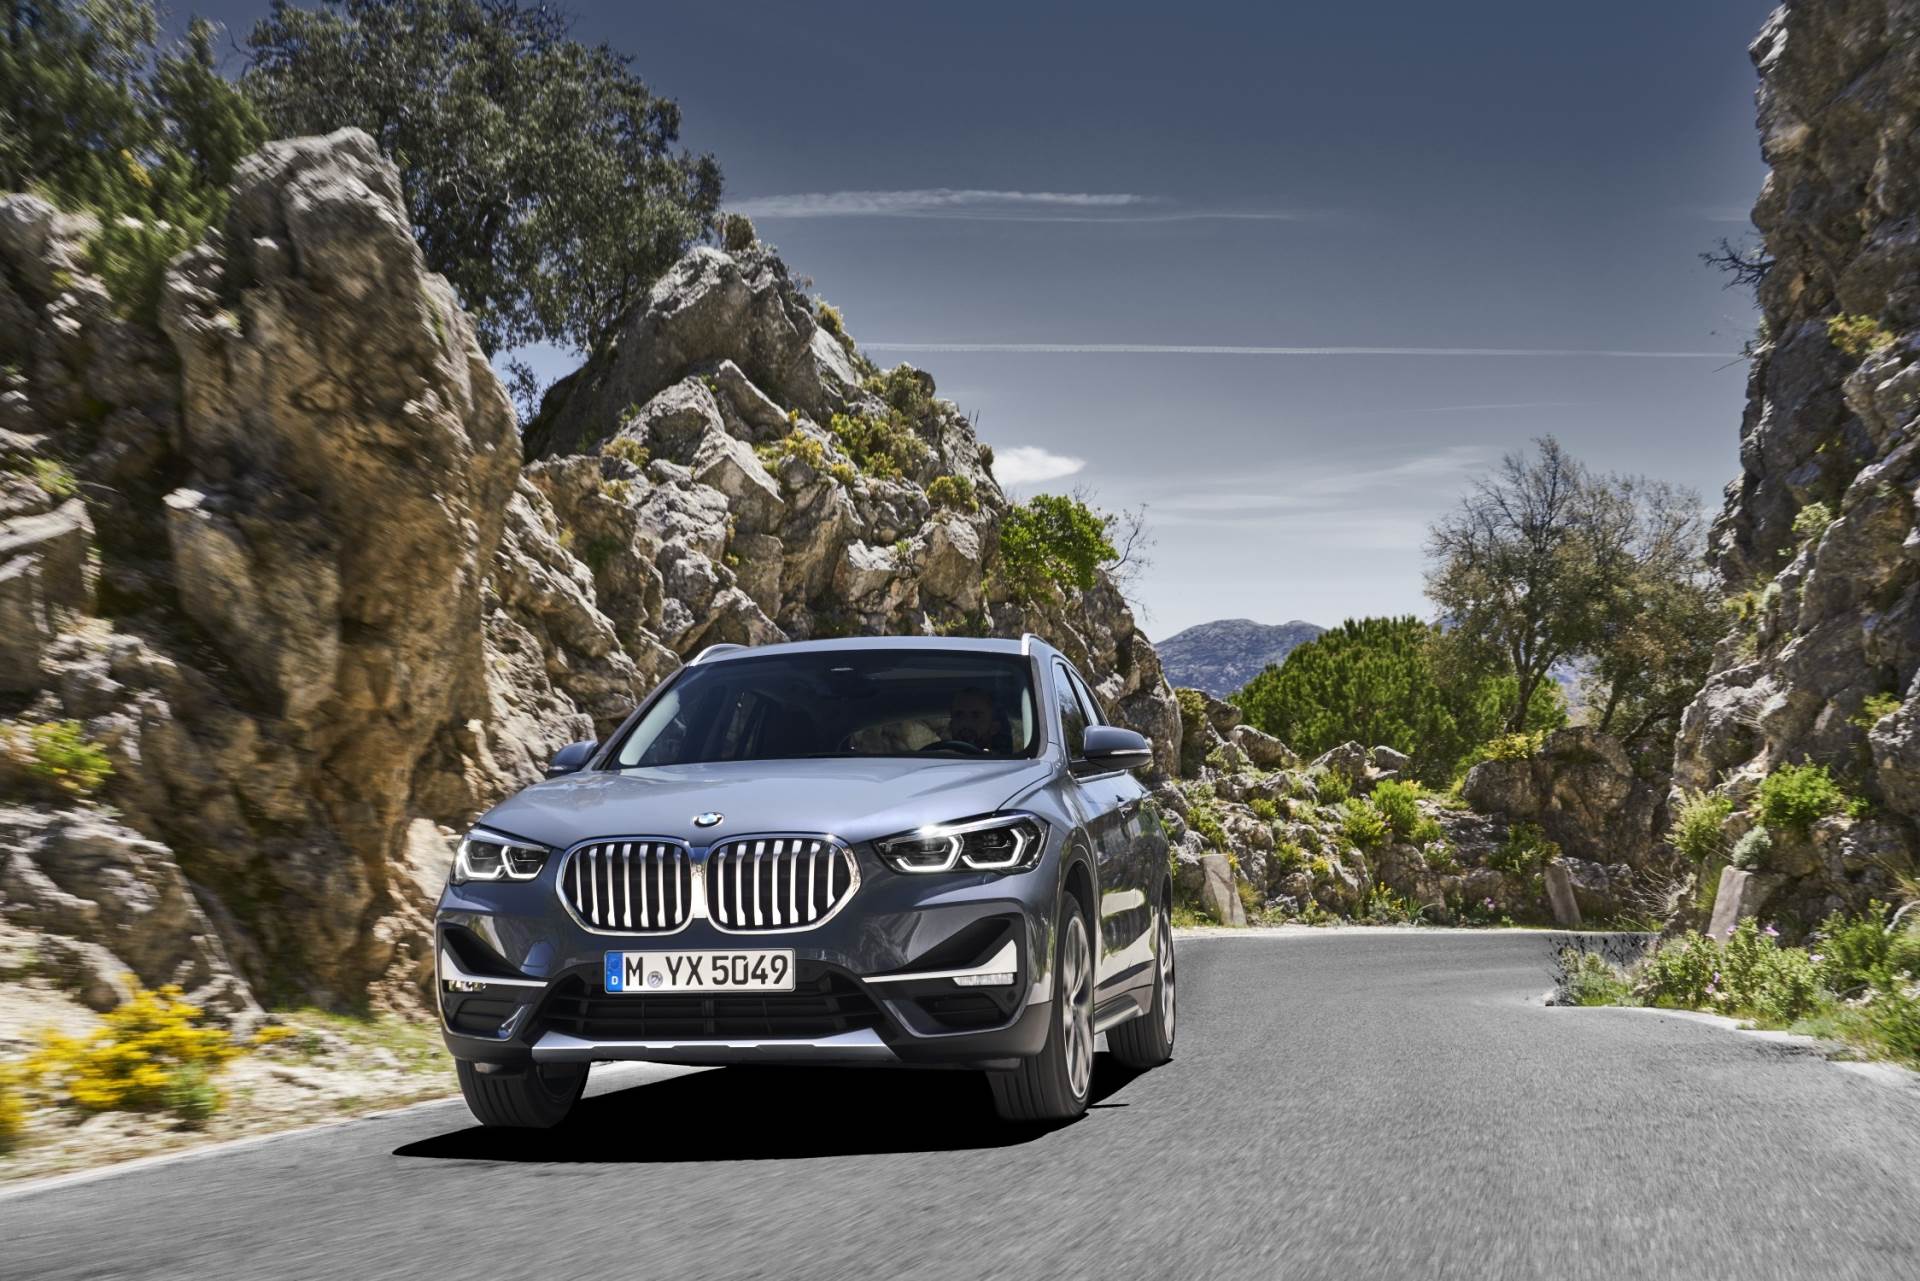 Izvrsna prilika za kupnju najpopularnijih BMW modela s lagera